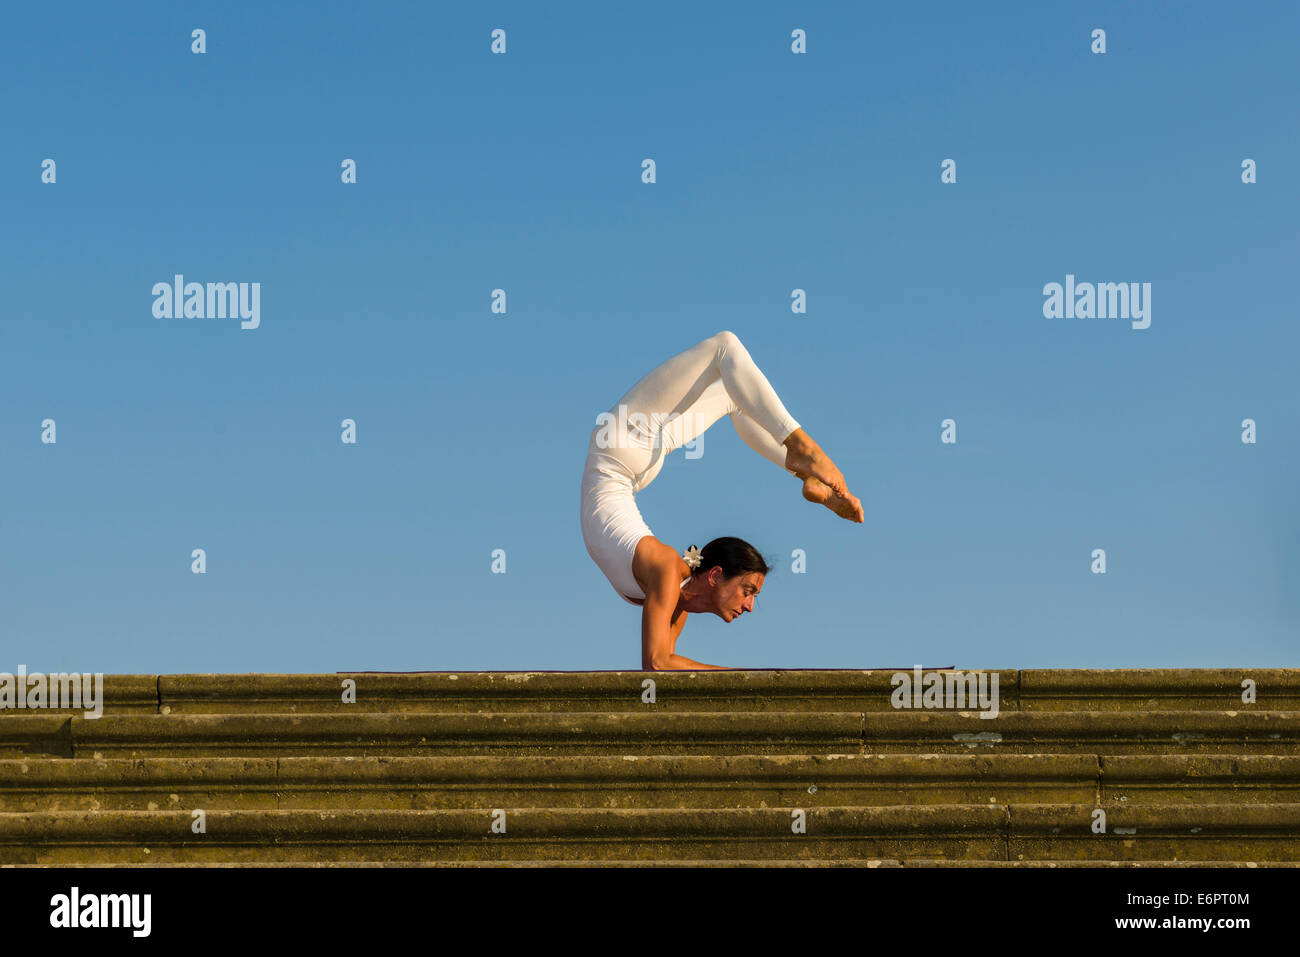 Junge Frau Hatha Yoga im Freien praktizieren, zeigt die Pose Vrischikasana, Scorpion pose Stockfoto